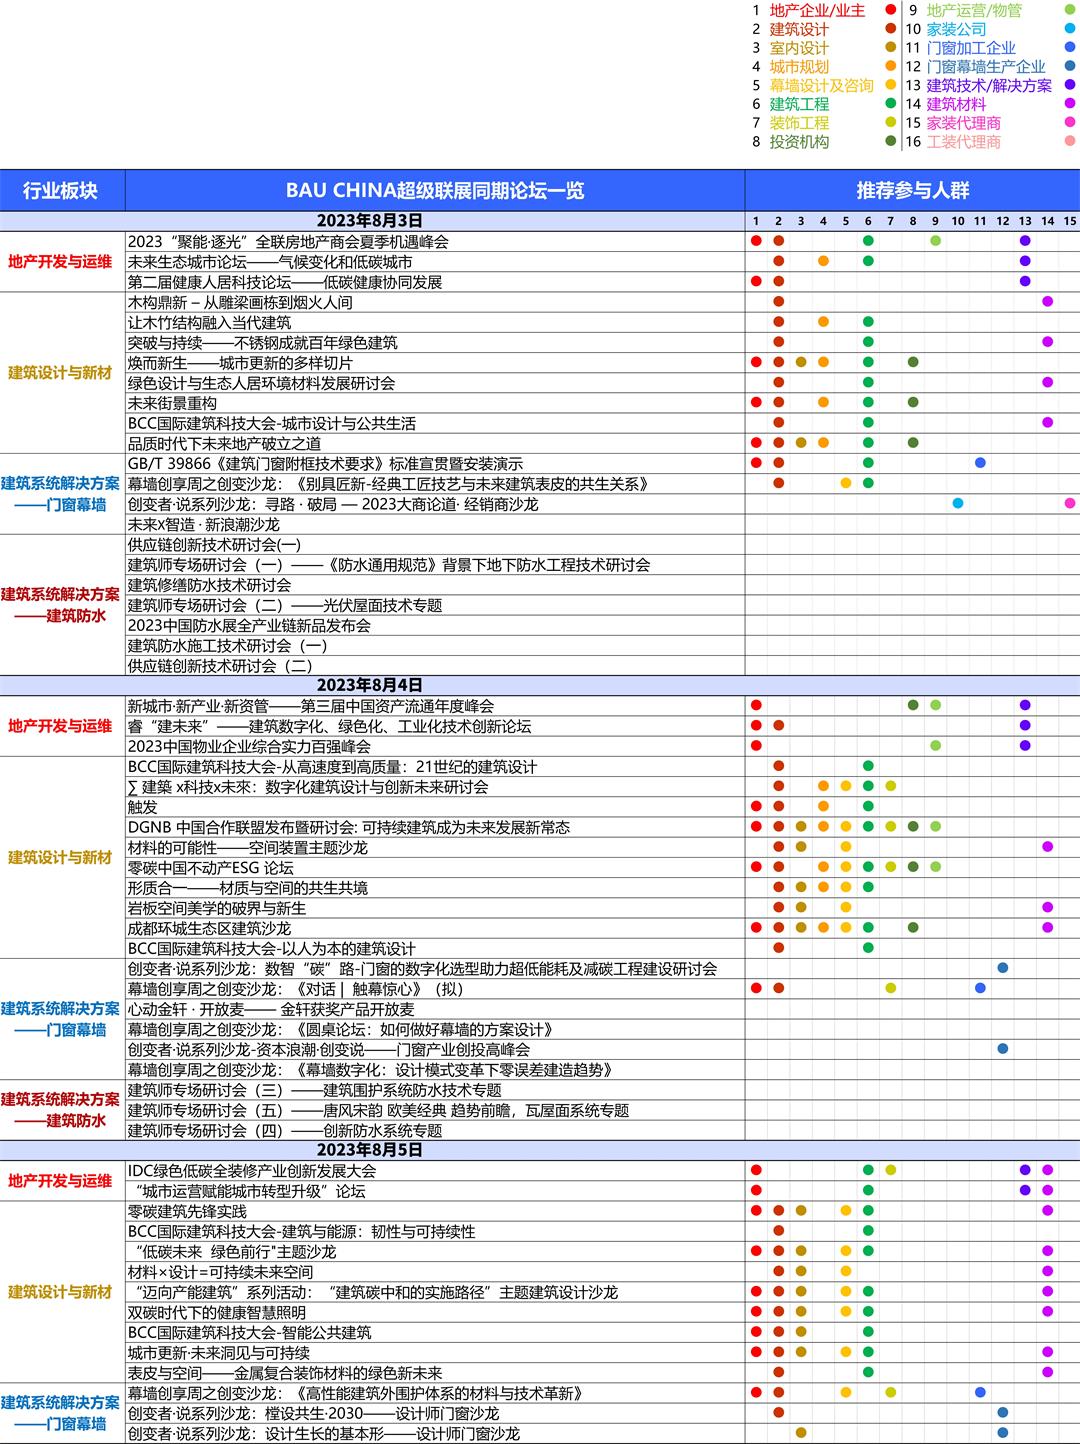 中英文-BAU CHINA 推文用活动大表的_中文 人群 整合版 0717 v2.jpg